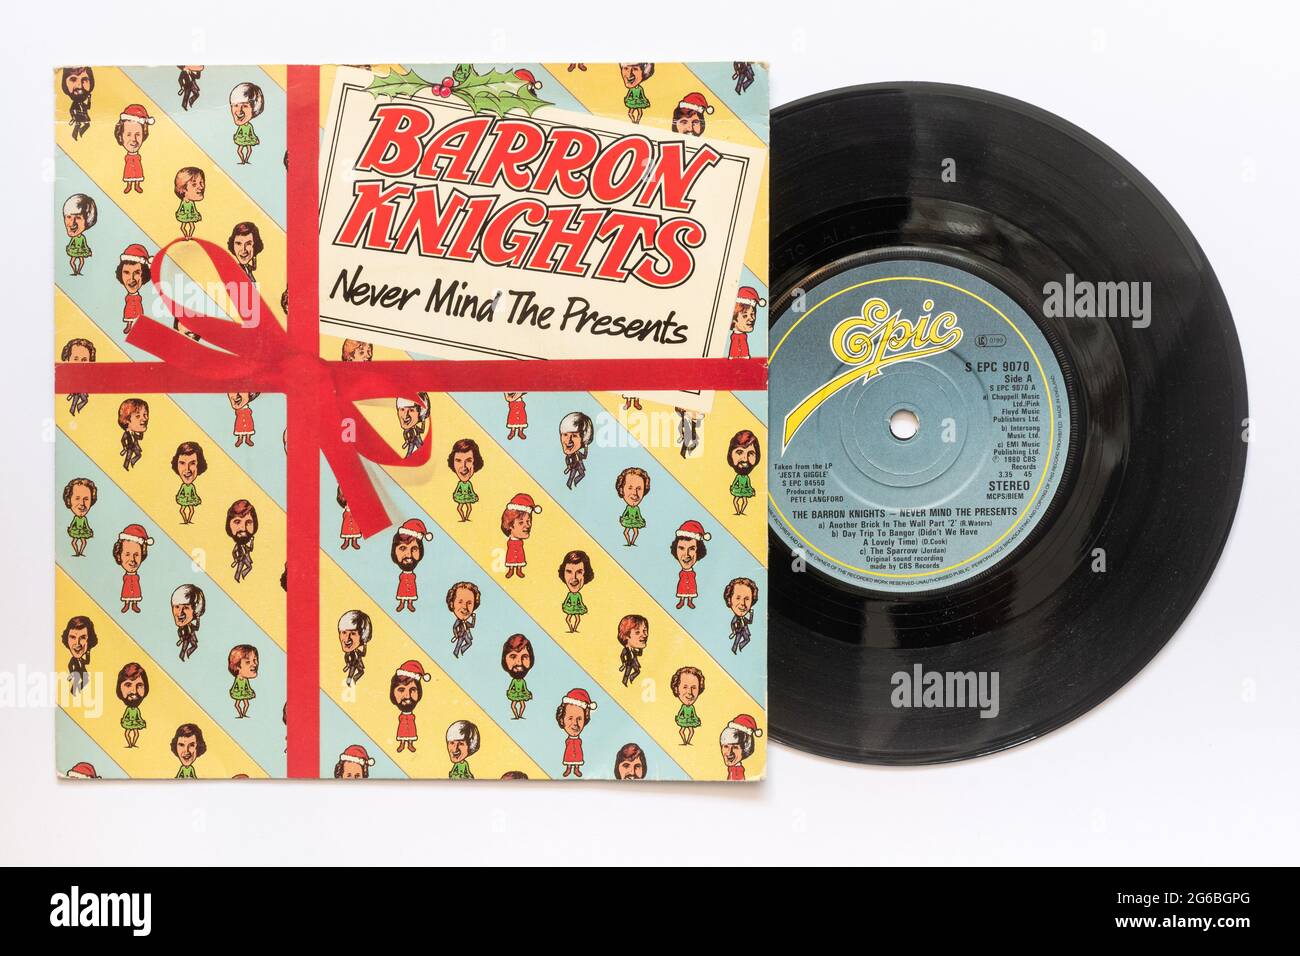 Non importa i regali del gruppo pop Barron Knights, una foto d'archivio del disco in vinile singolo da 7' a 45 giri/min nella manica Foto Stock